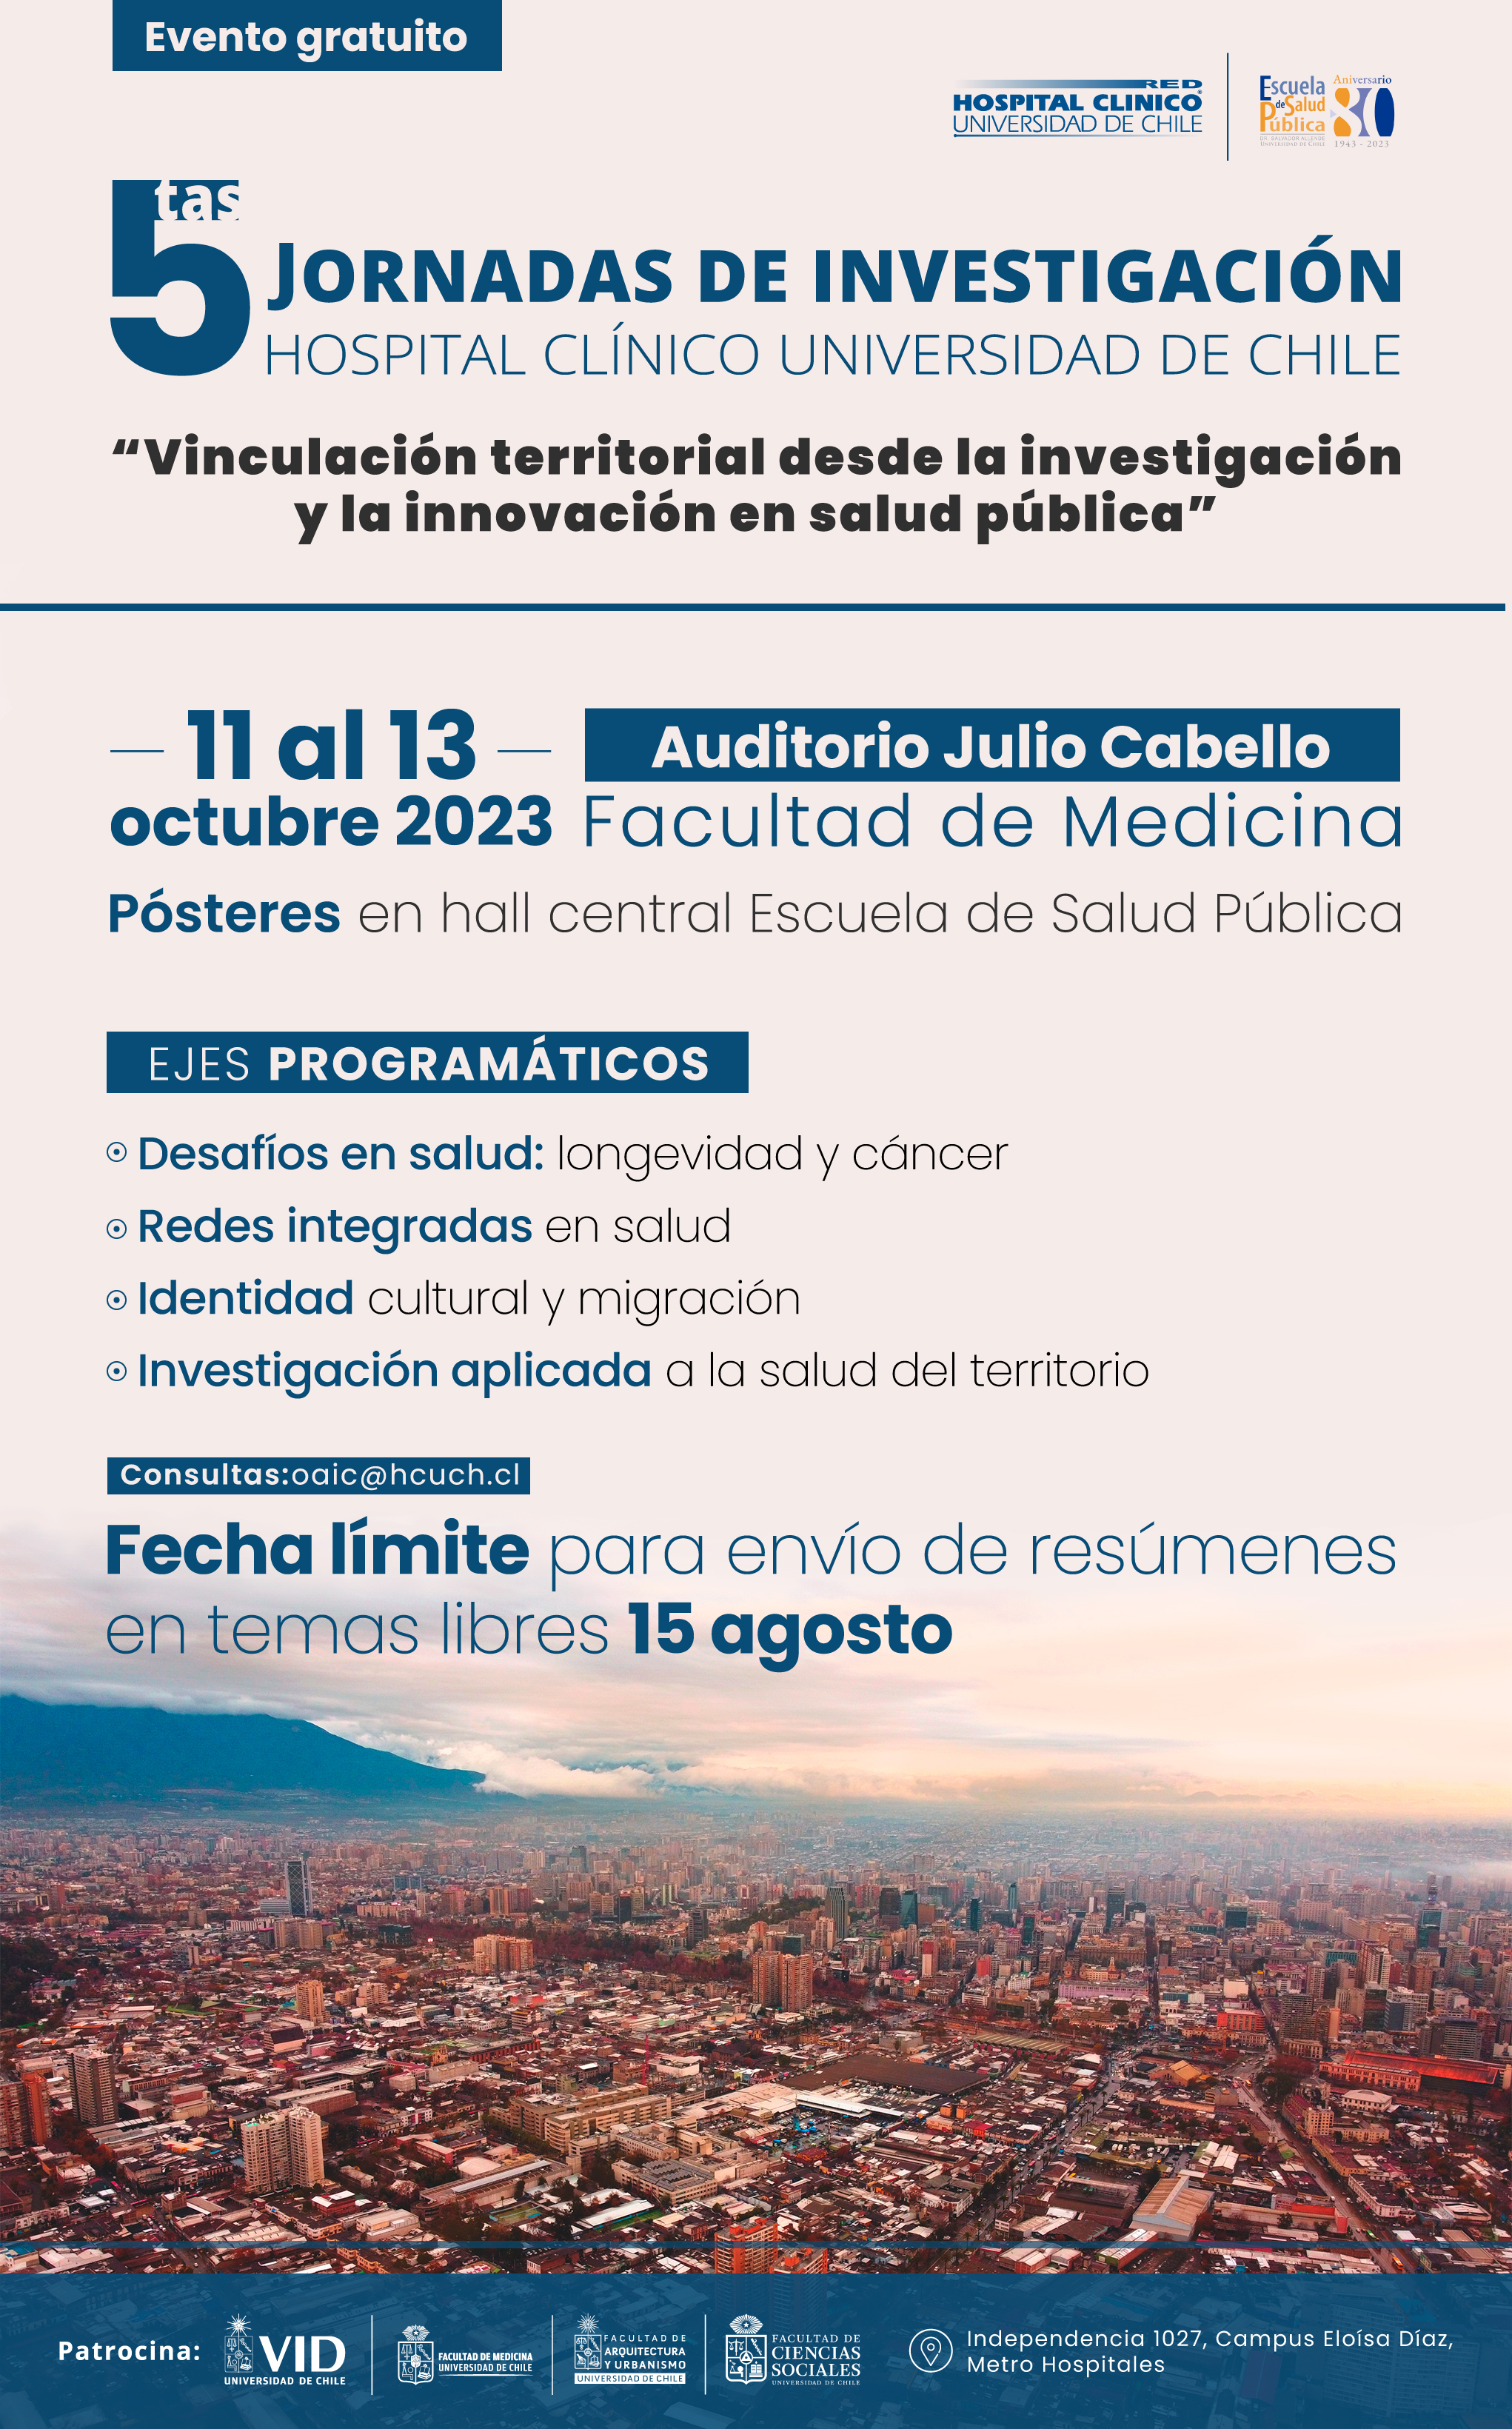 5tas Jornadas de Investigación Hospital Clínico Universidad de Chile 